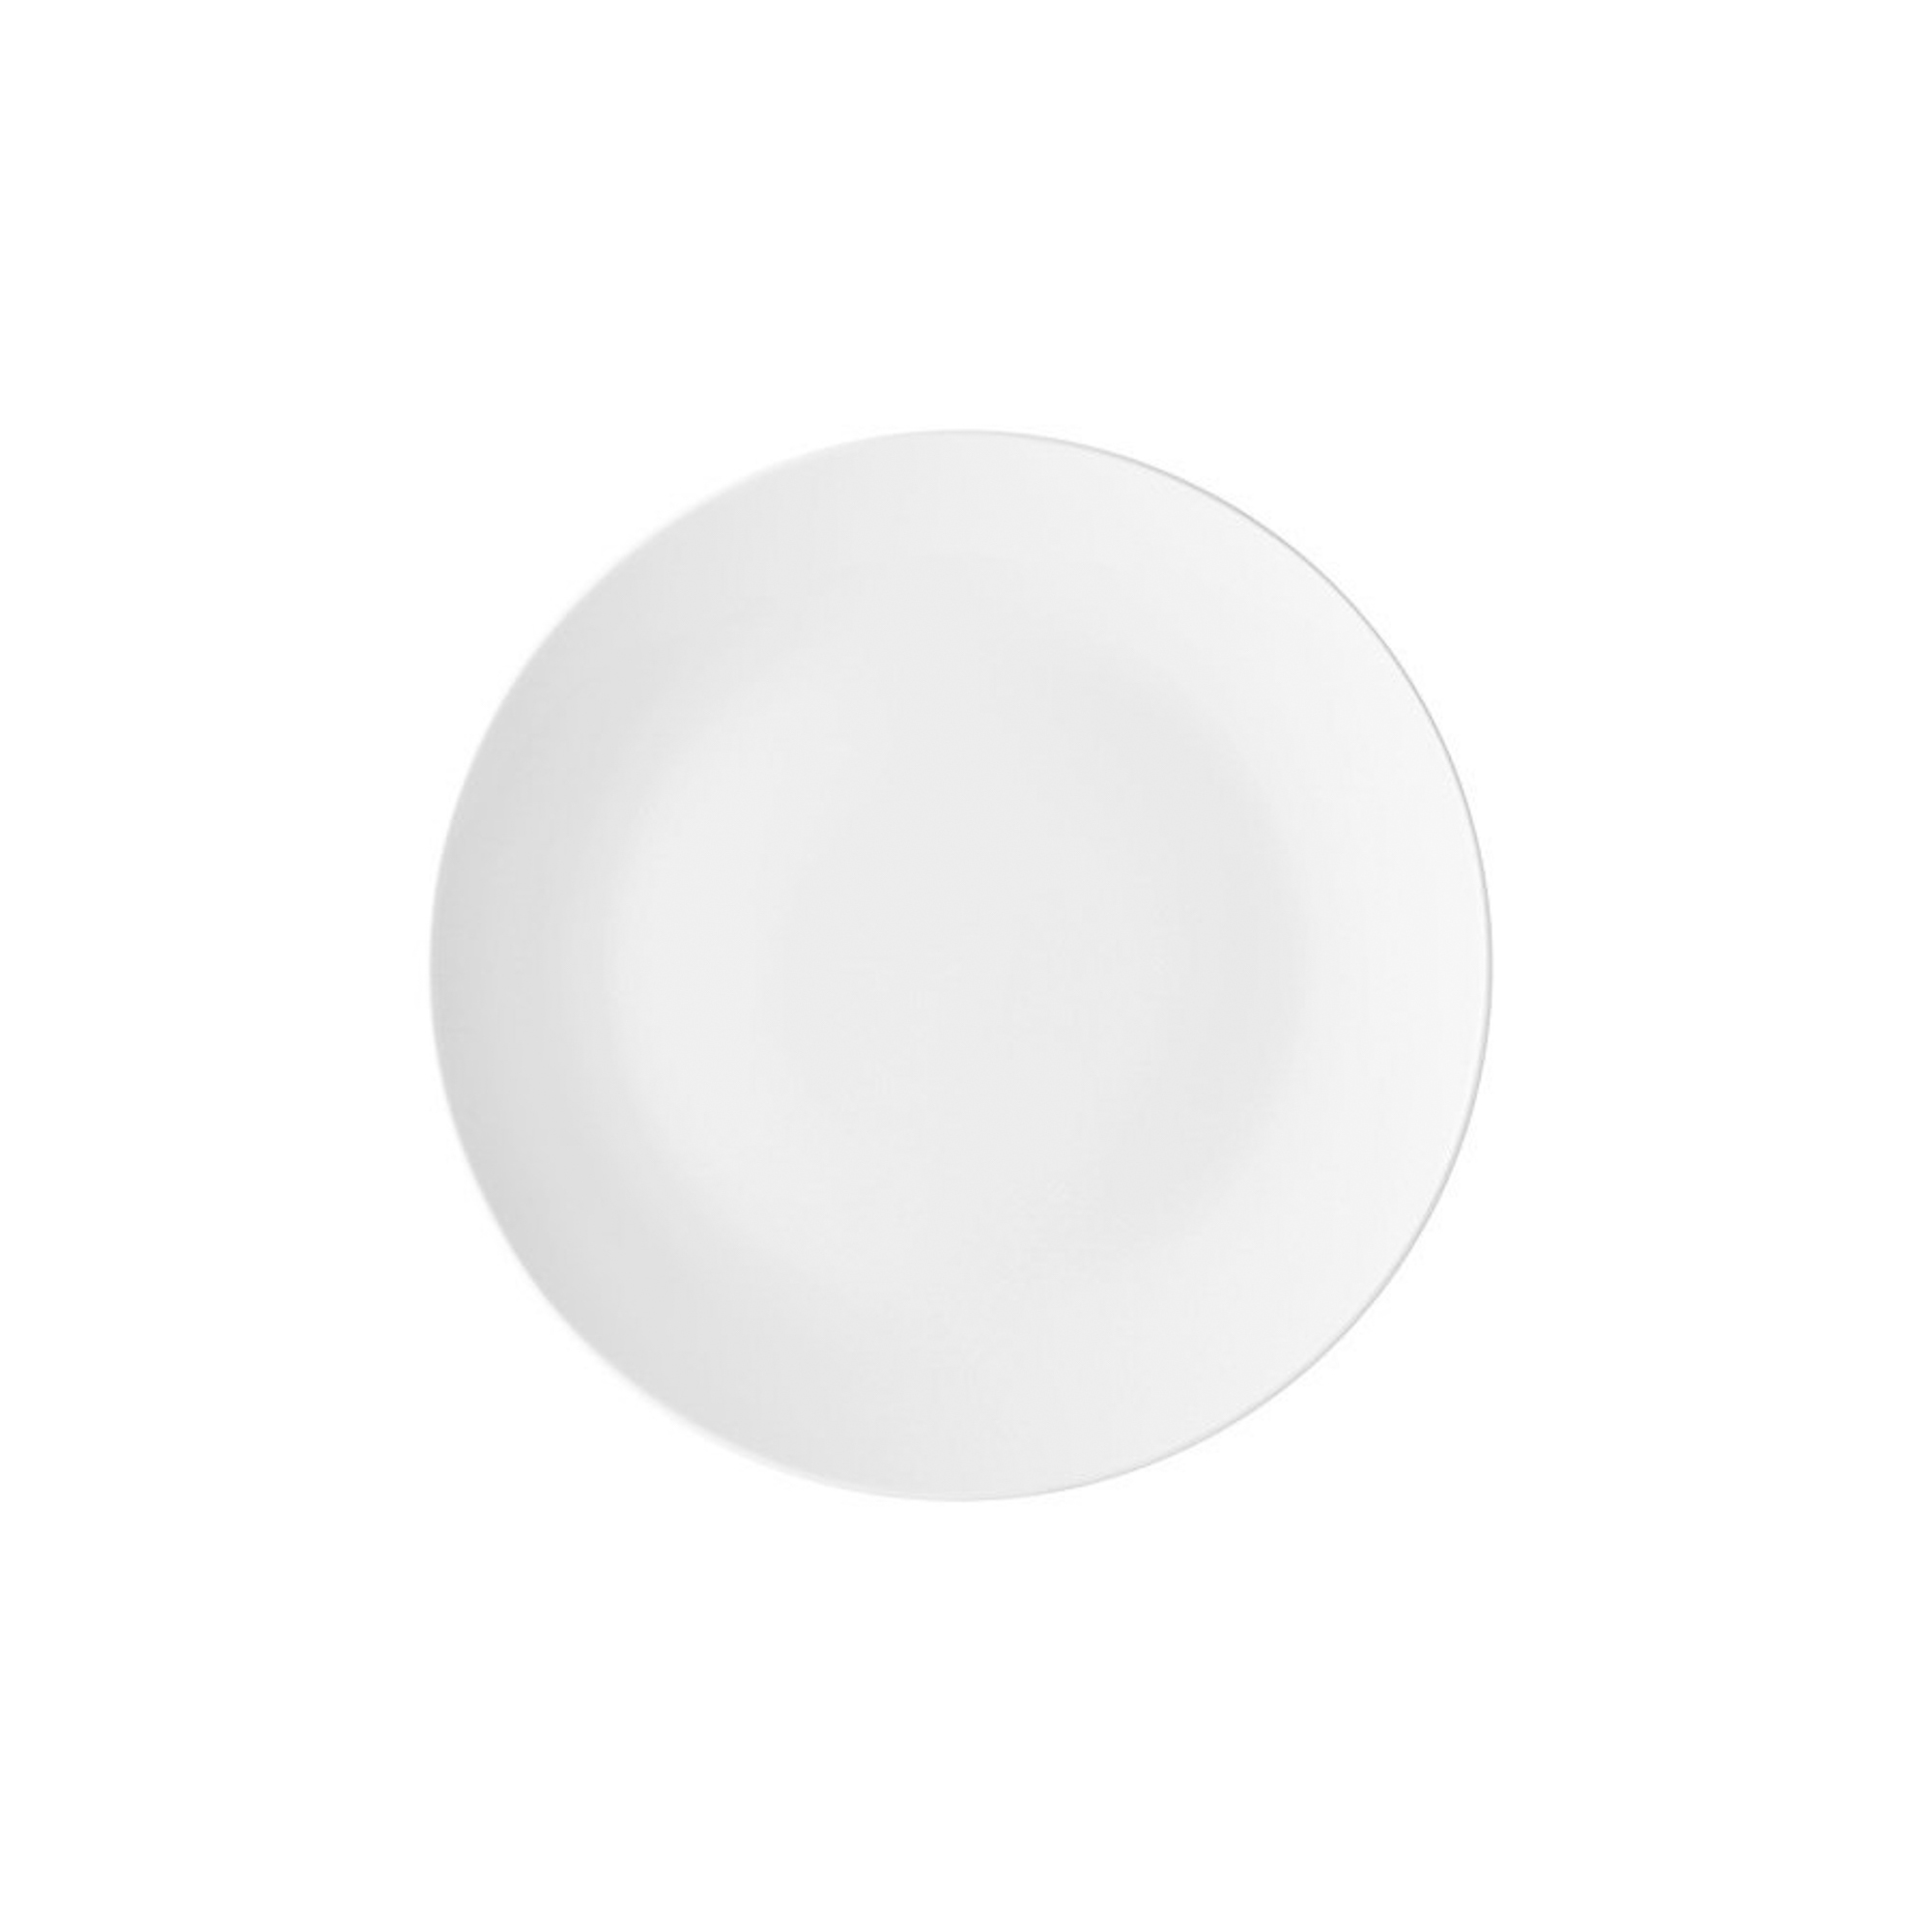 тарелка закусочная easy life пасхальная коллекция Тарелка закусочная Maxwell & williams Белая коллекция 19 см